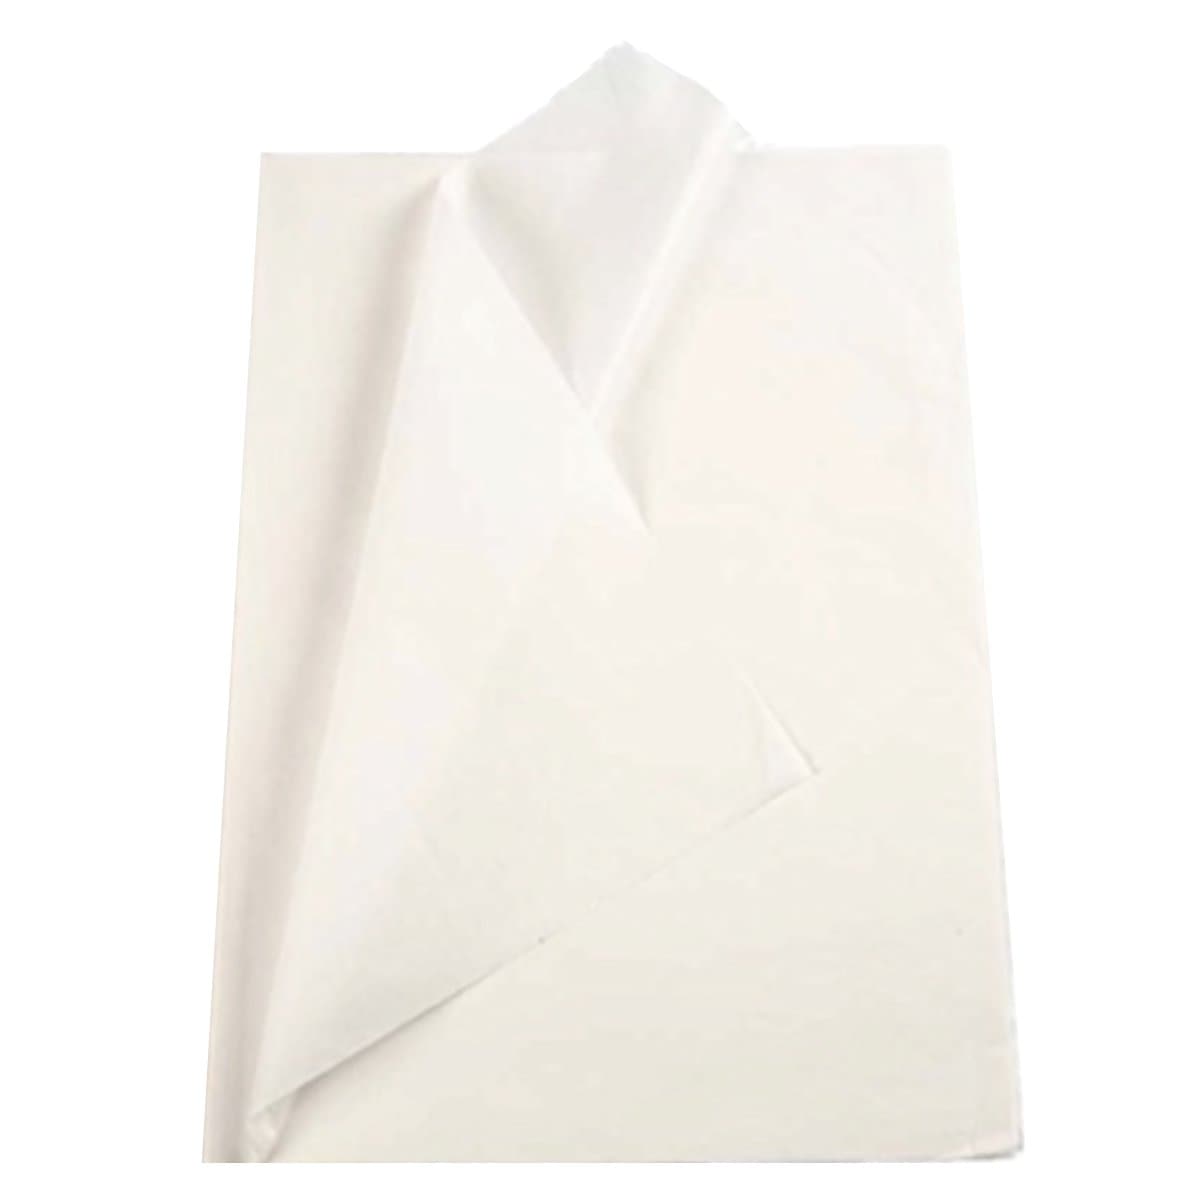 Tissue Paper, 25sheet/pack, White